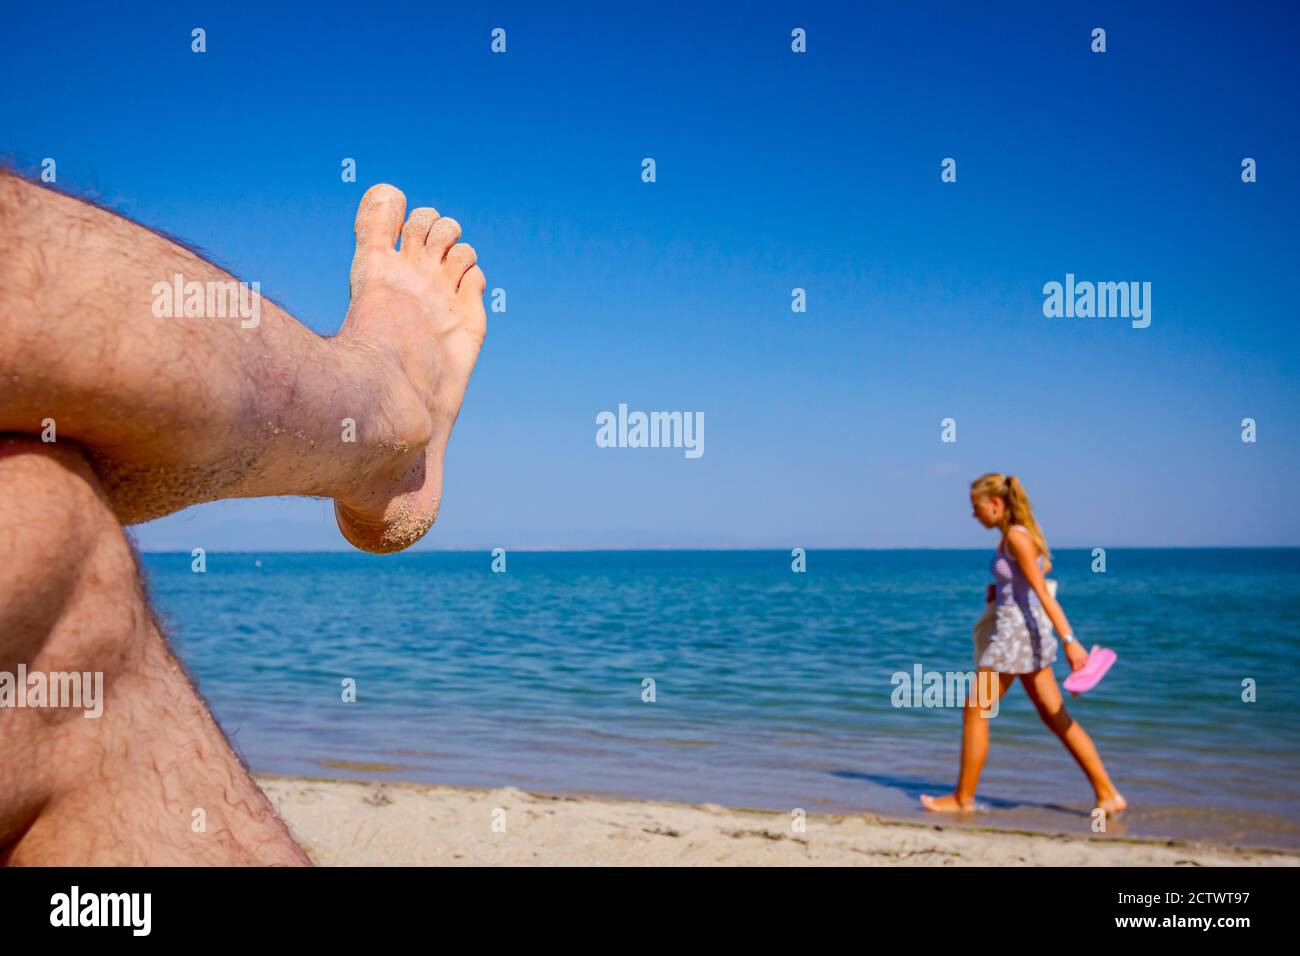 Le gambe incrociate dell'uomo si prendono il sole distendendo spensierato sulla sabbia accanto alla costa, sulla spiaggia pubblica. Foto Stock